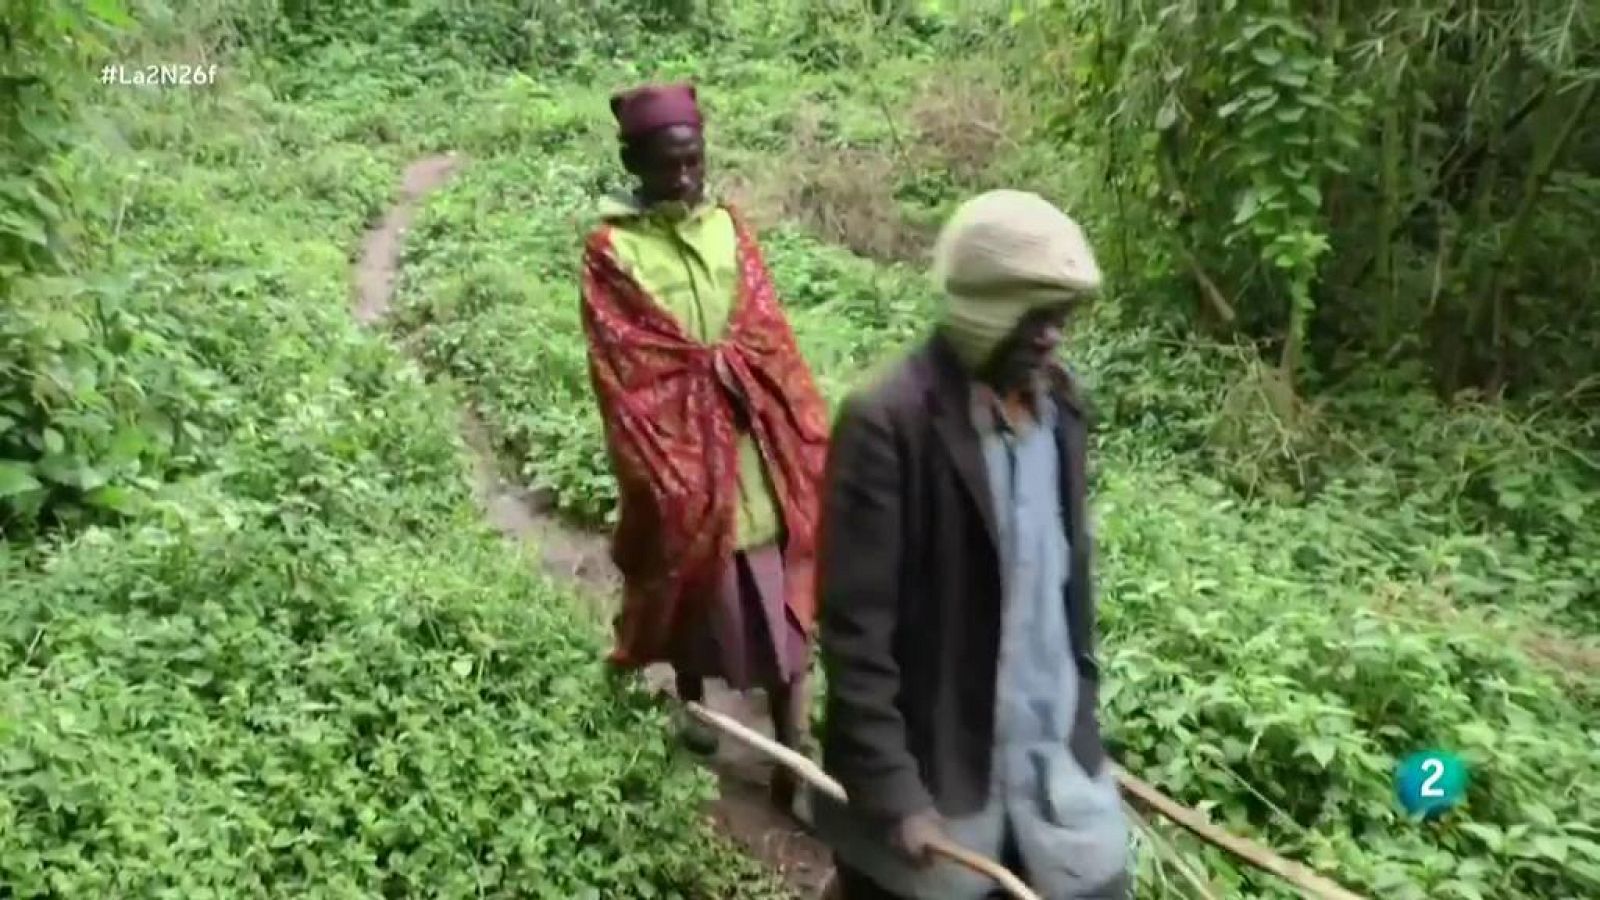 La tribu pigmea de Batwa propone conservar y replantar las semillas